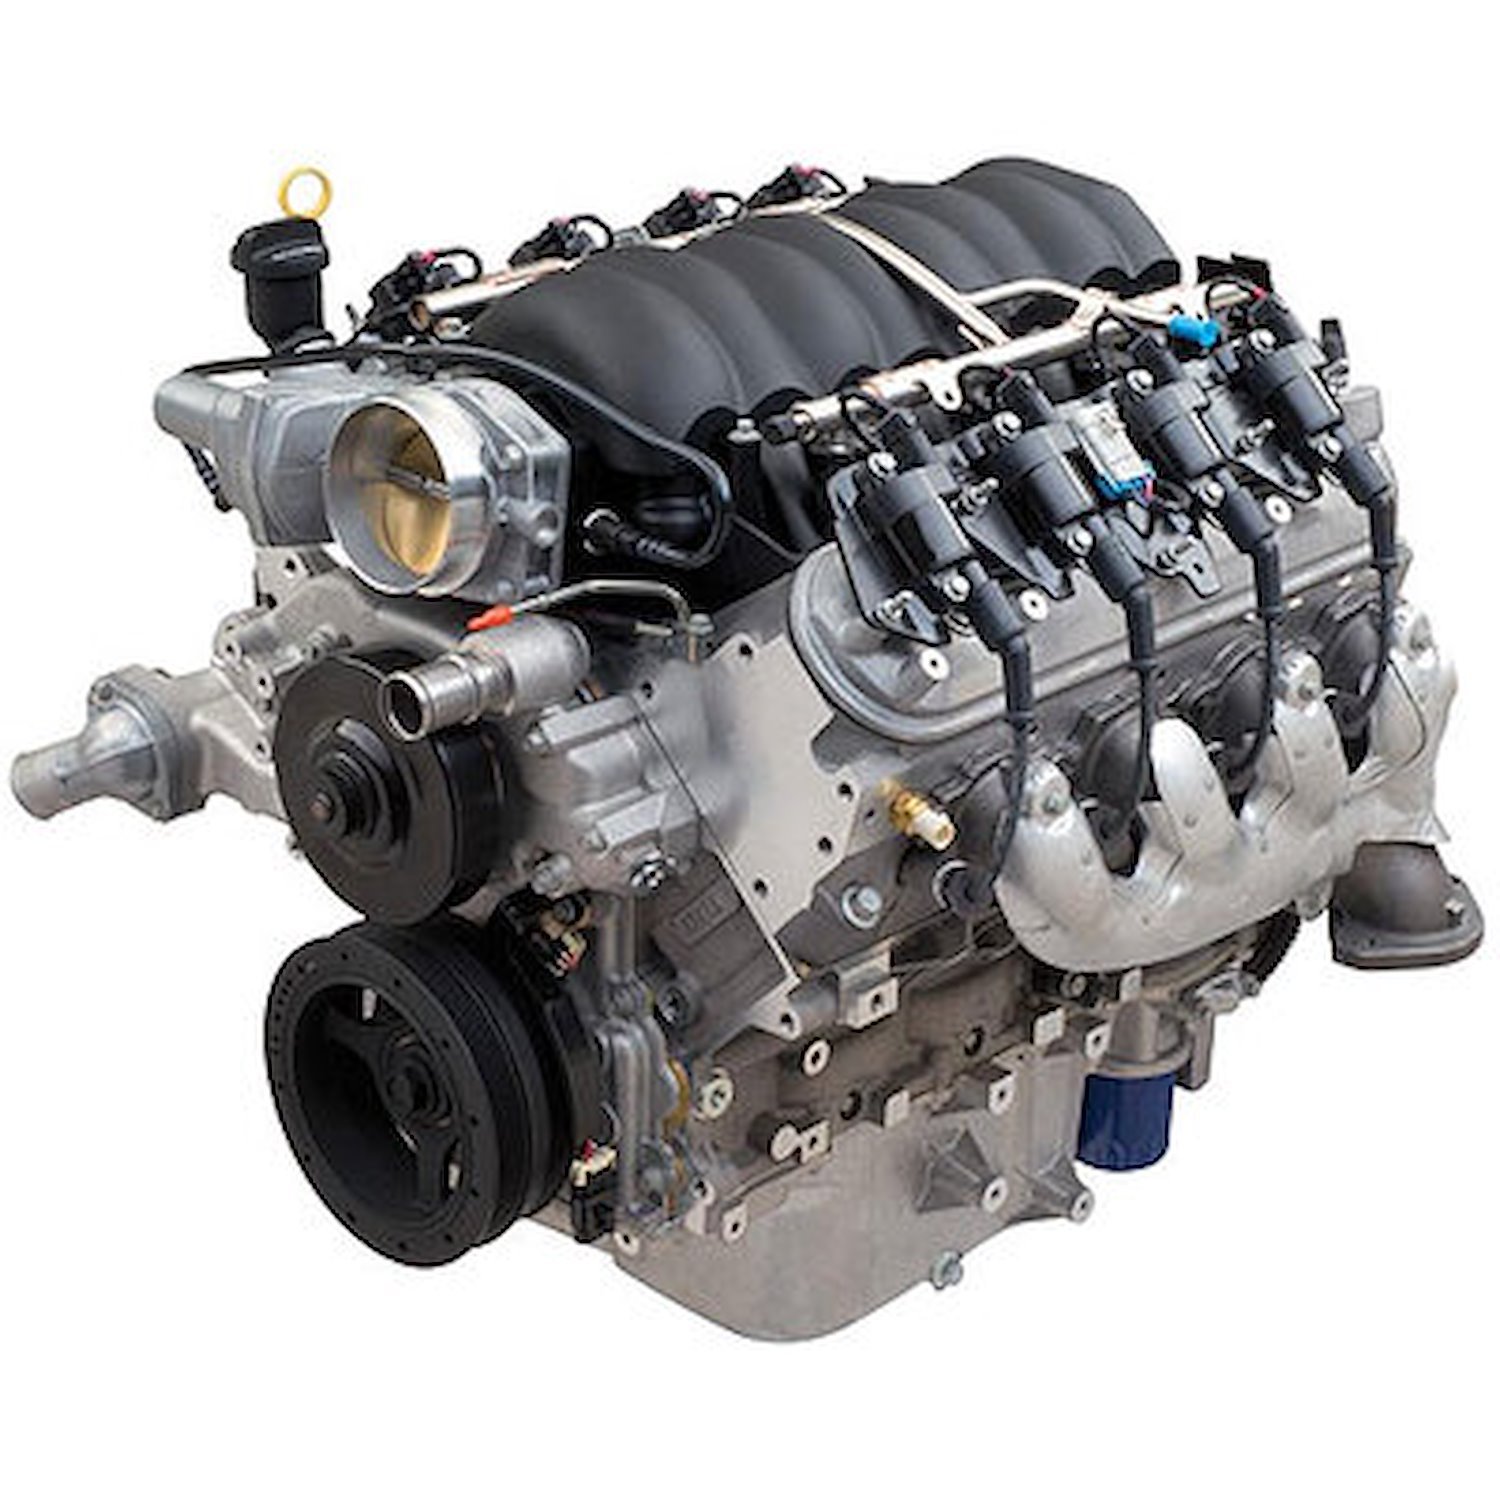 LS376/480 376ci 6.2L Crate Engine 495 HP @ 6,200 RPM